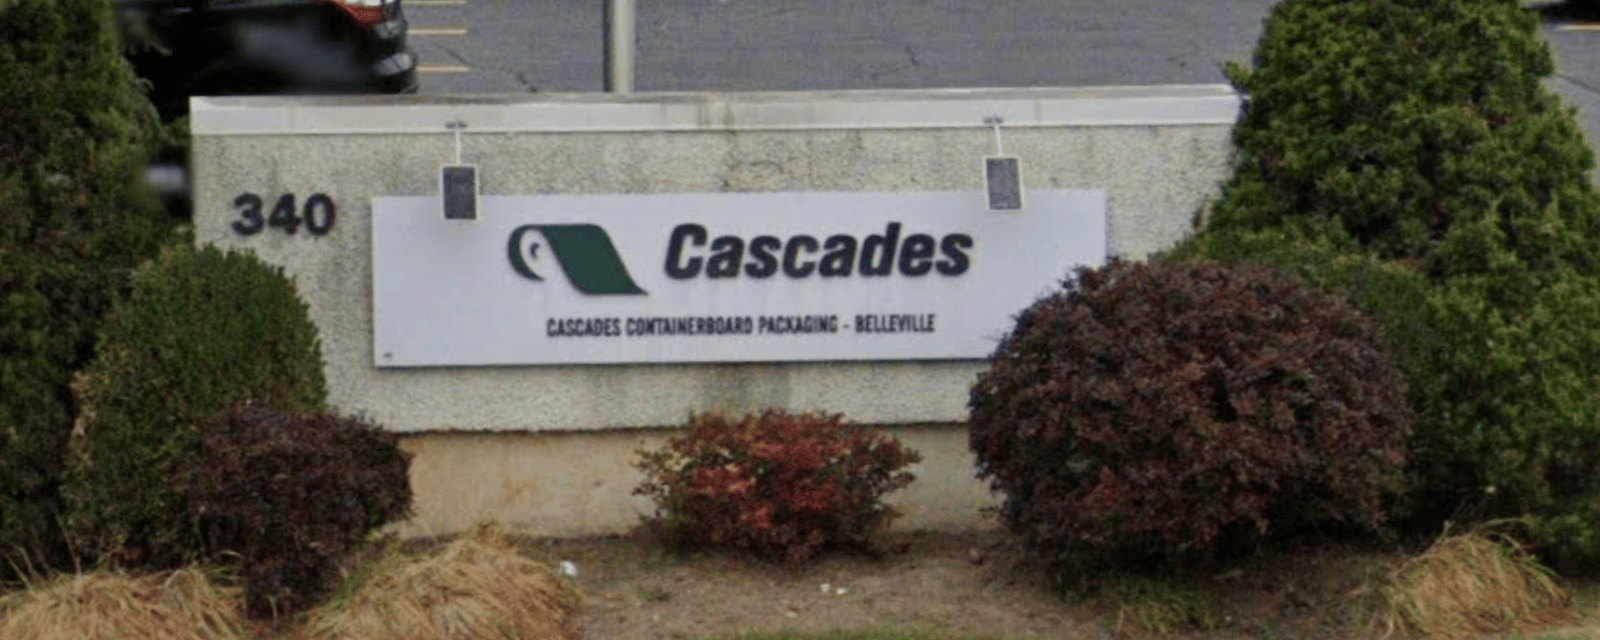 Plus de 300 personnes perdent leur emploi alors que Cascade annonce la fermeture de plusieurs usines 